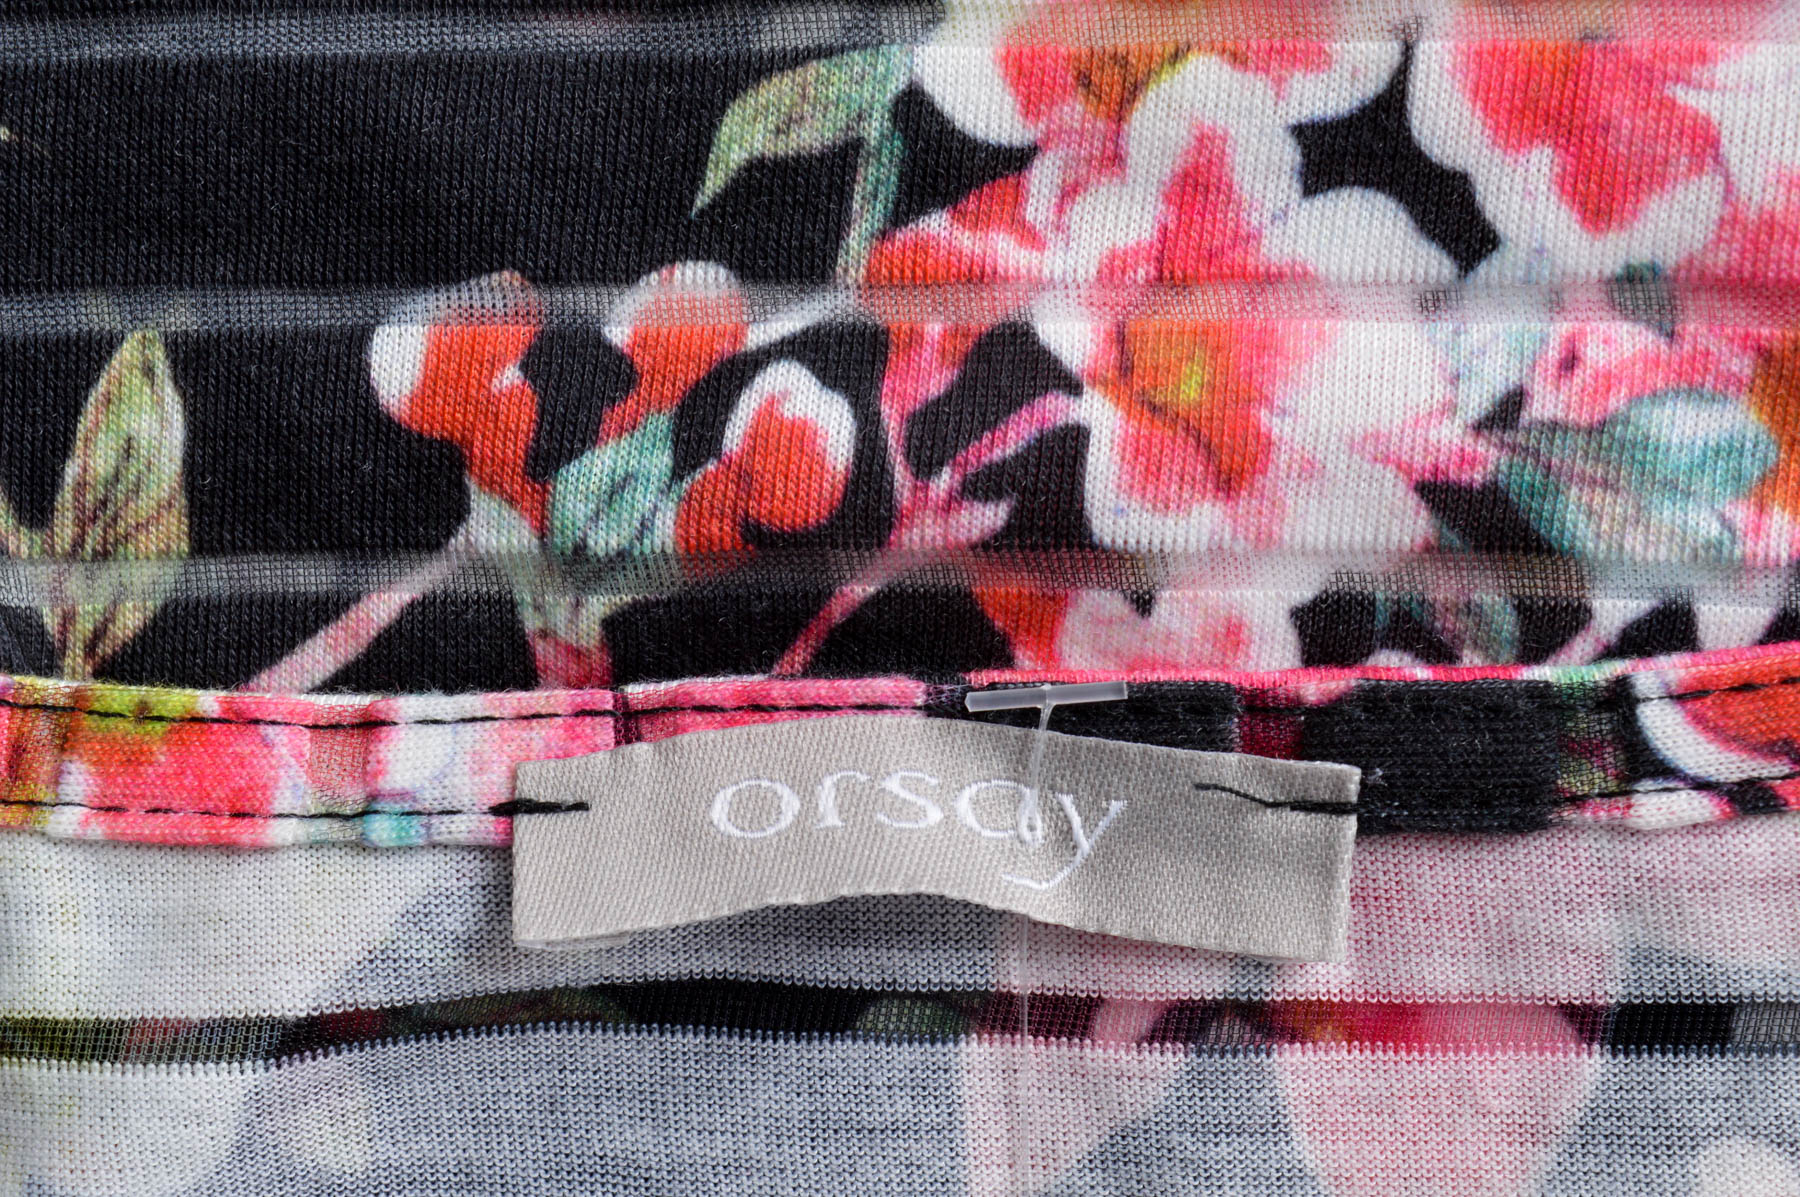 Дамска тениска - Orsay - 2